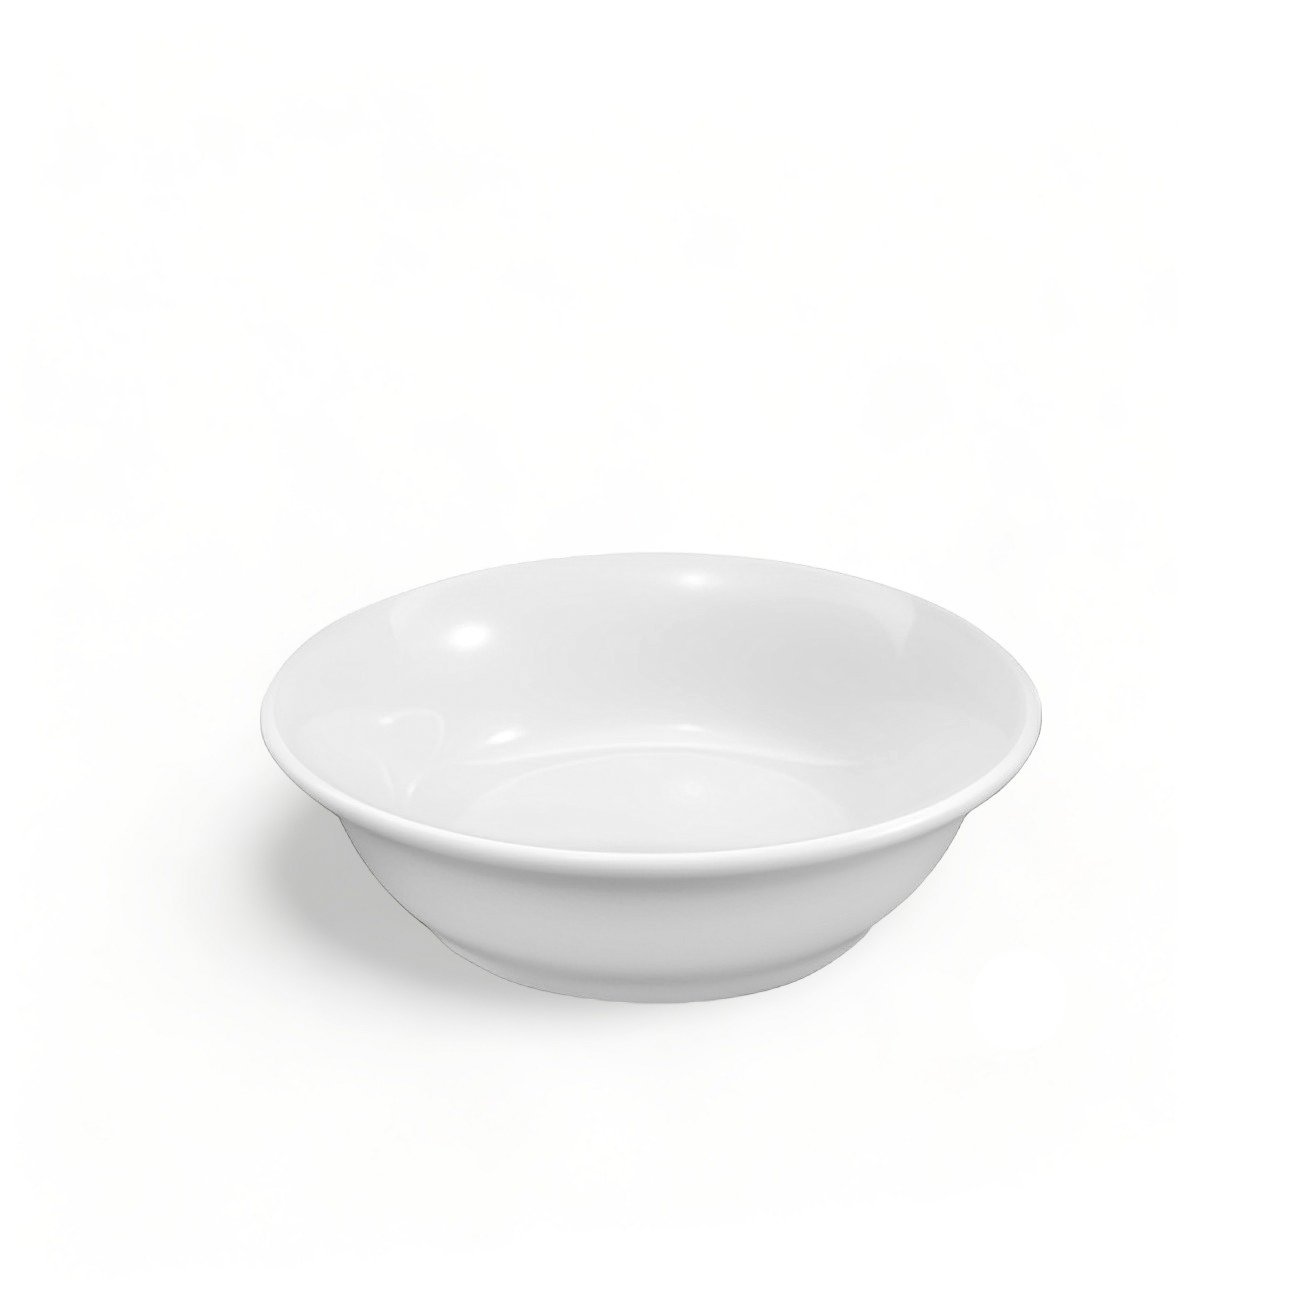 2 Tigela de Porcelana Premium Cumbuca Pote Bowl 350ml - 1